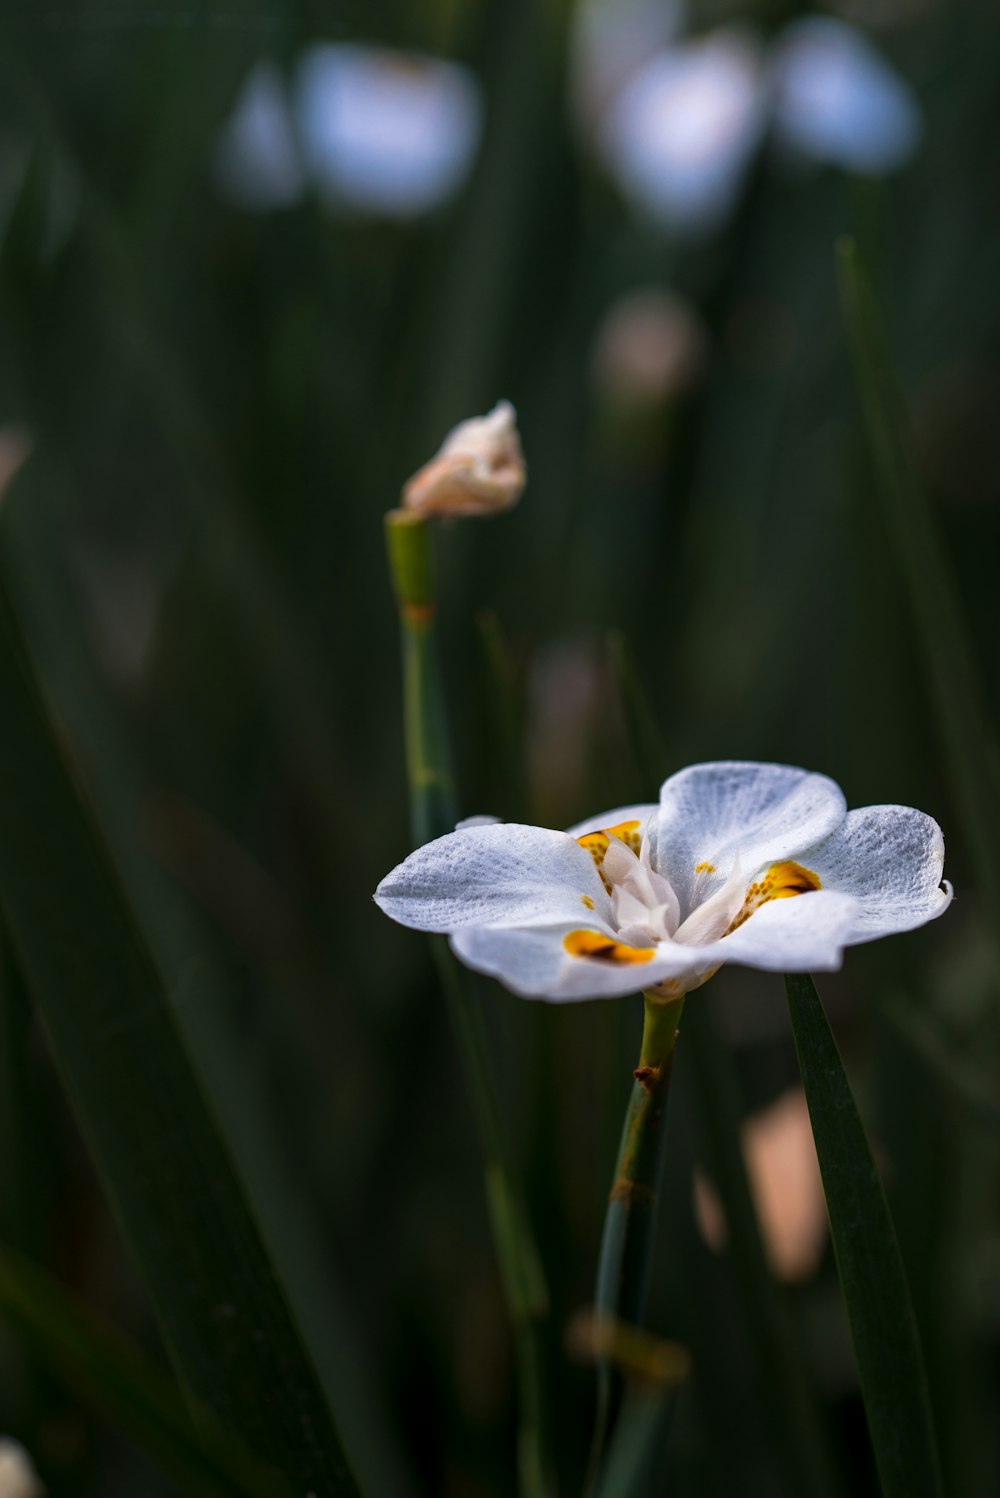 white and purple flower in tilt shift lens